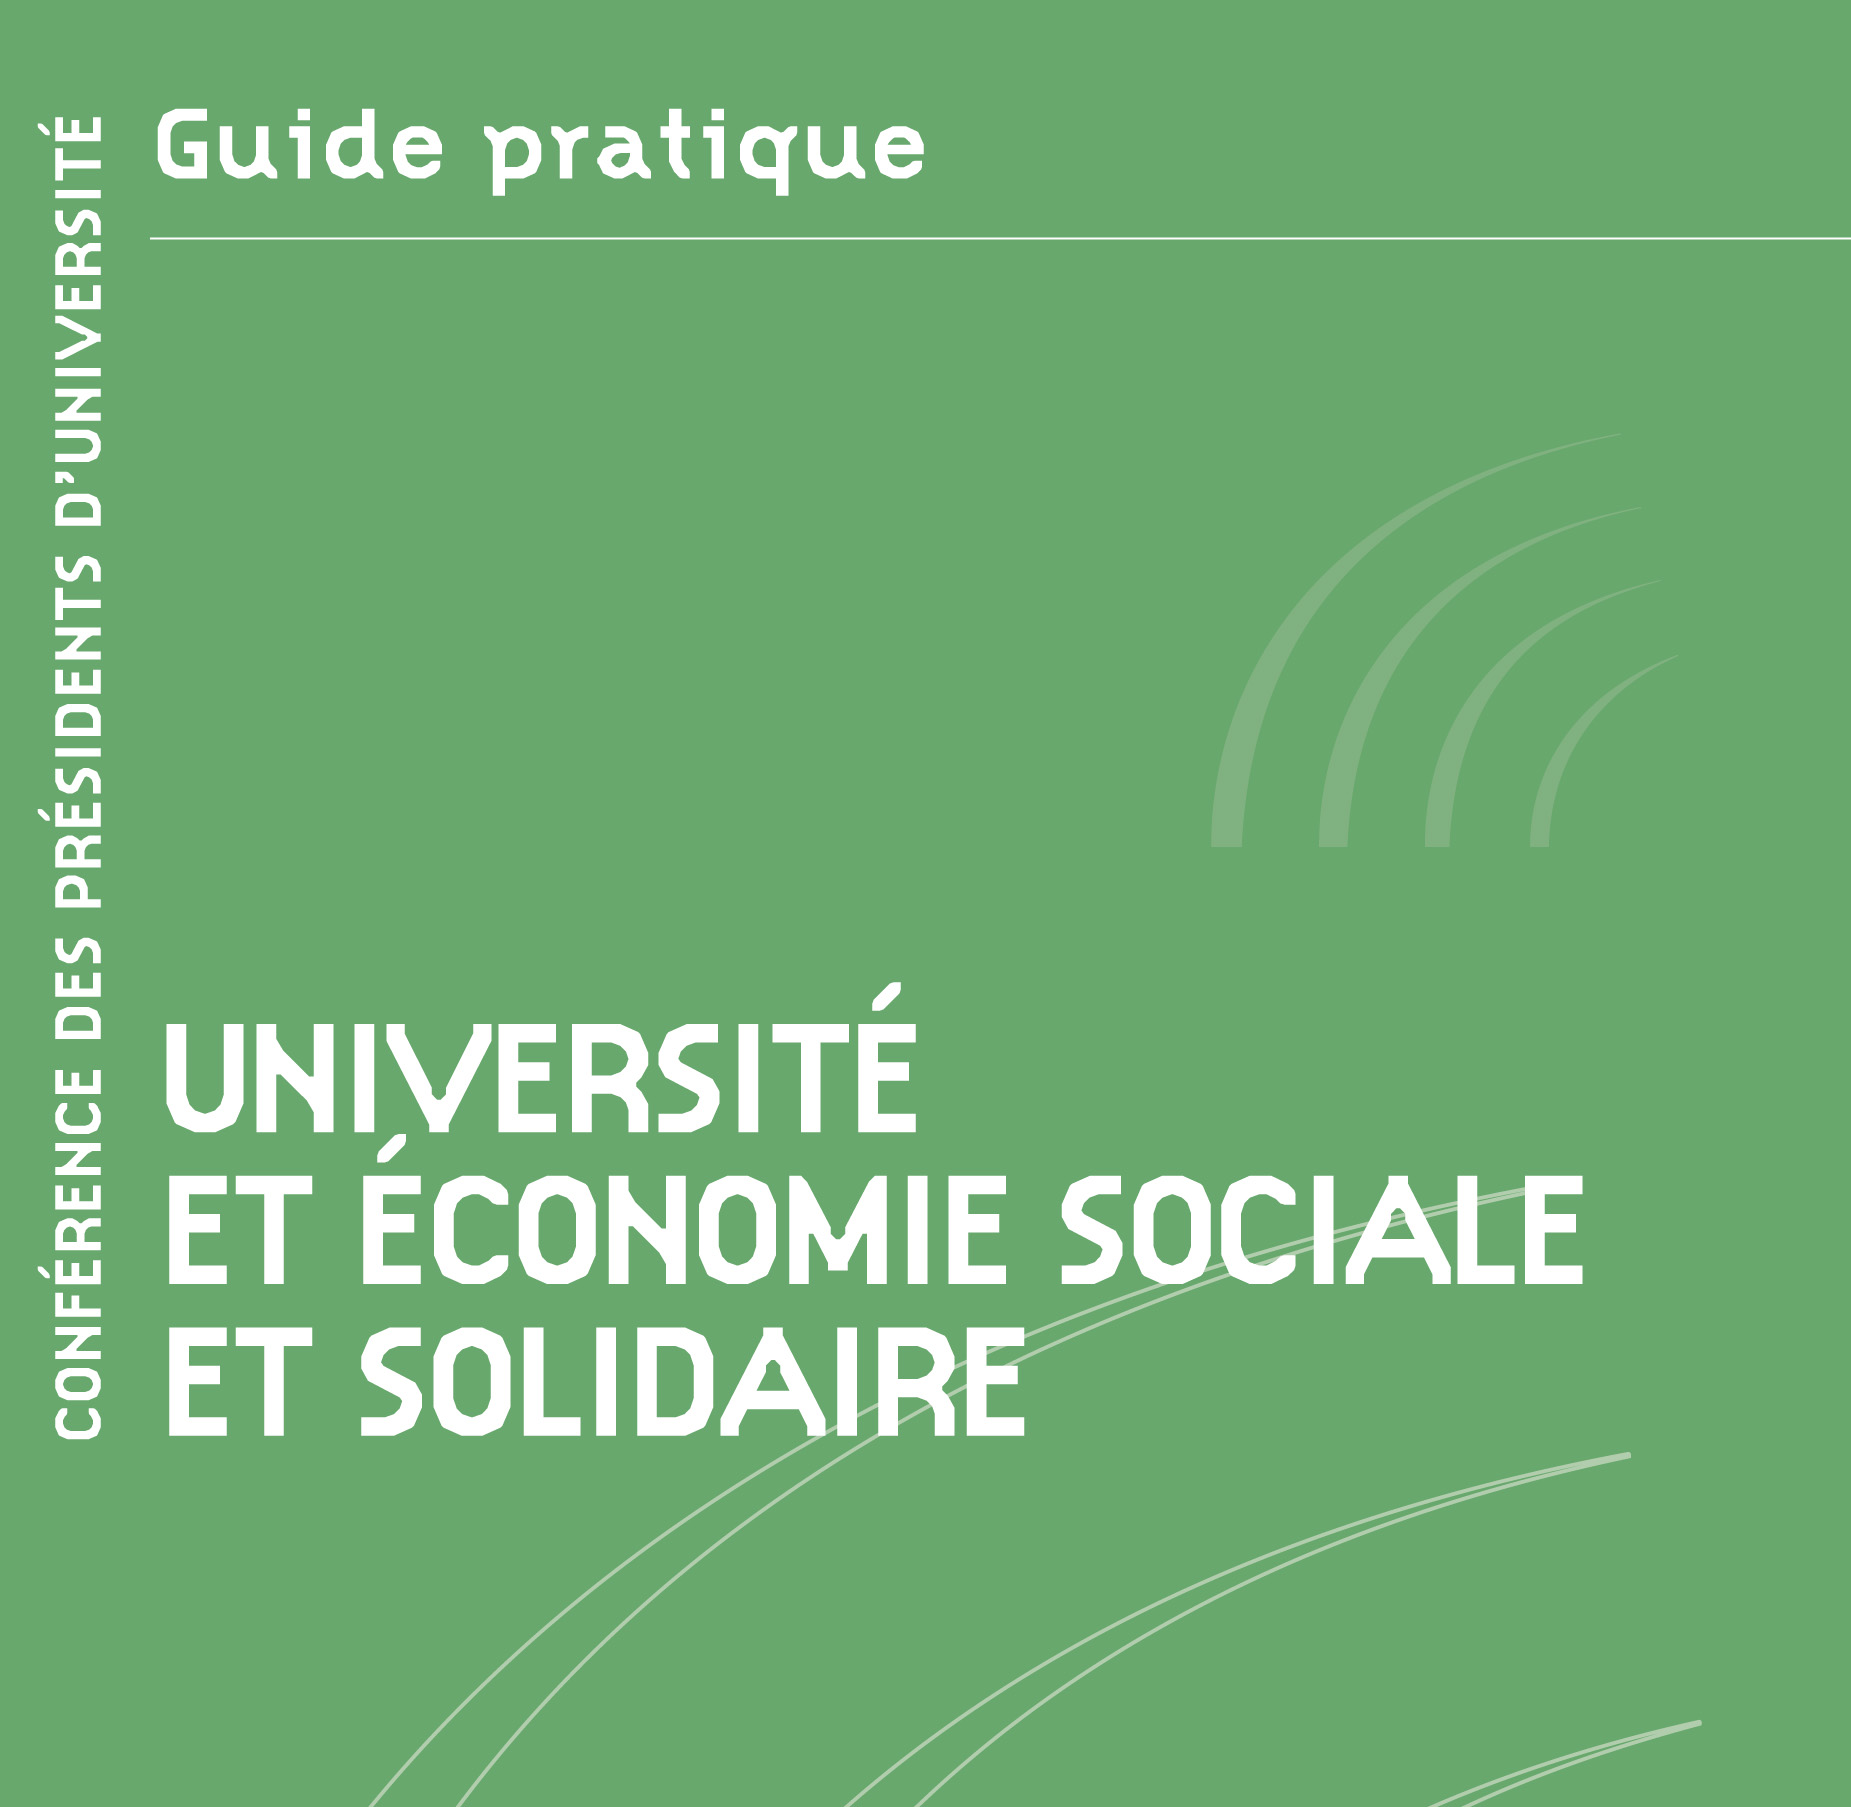 Université et économie sociale et solidaire